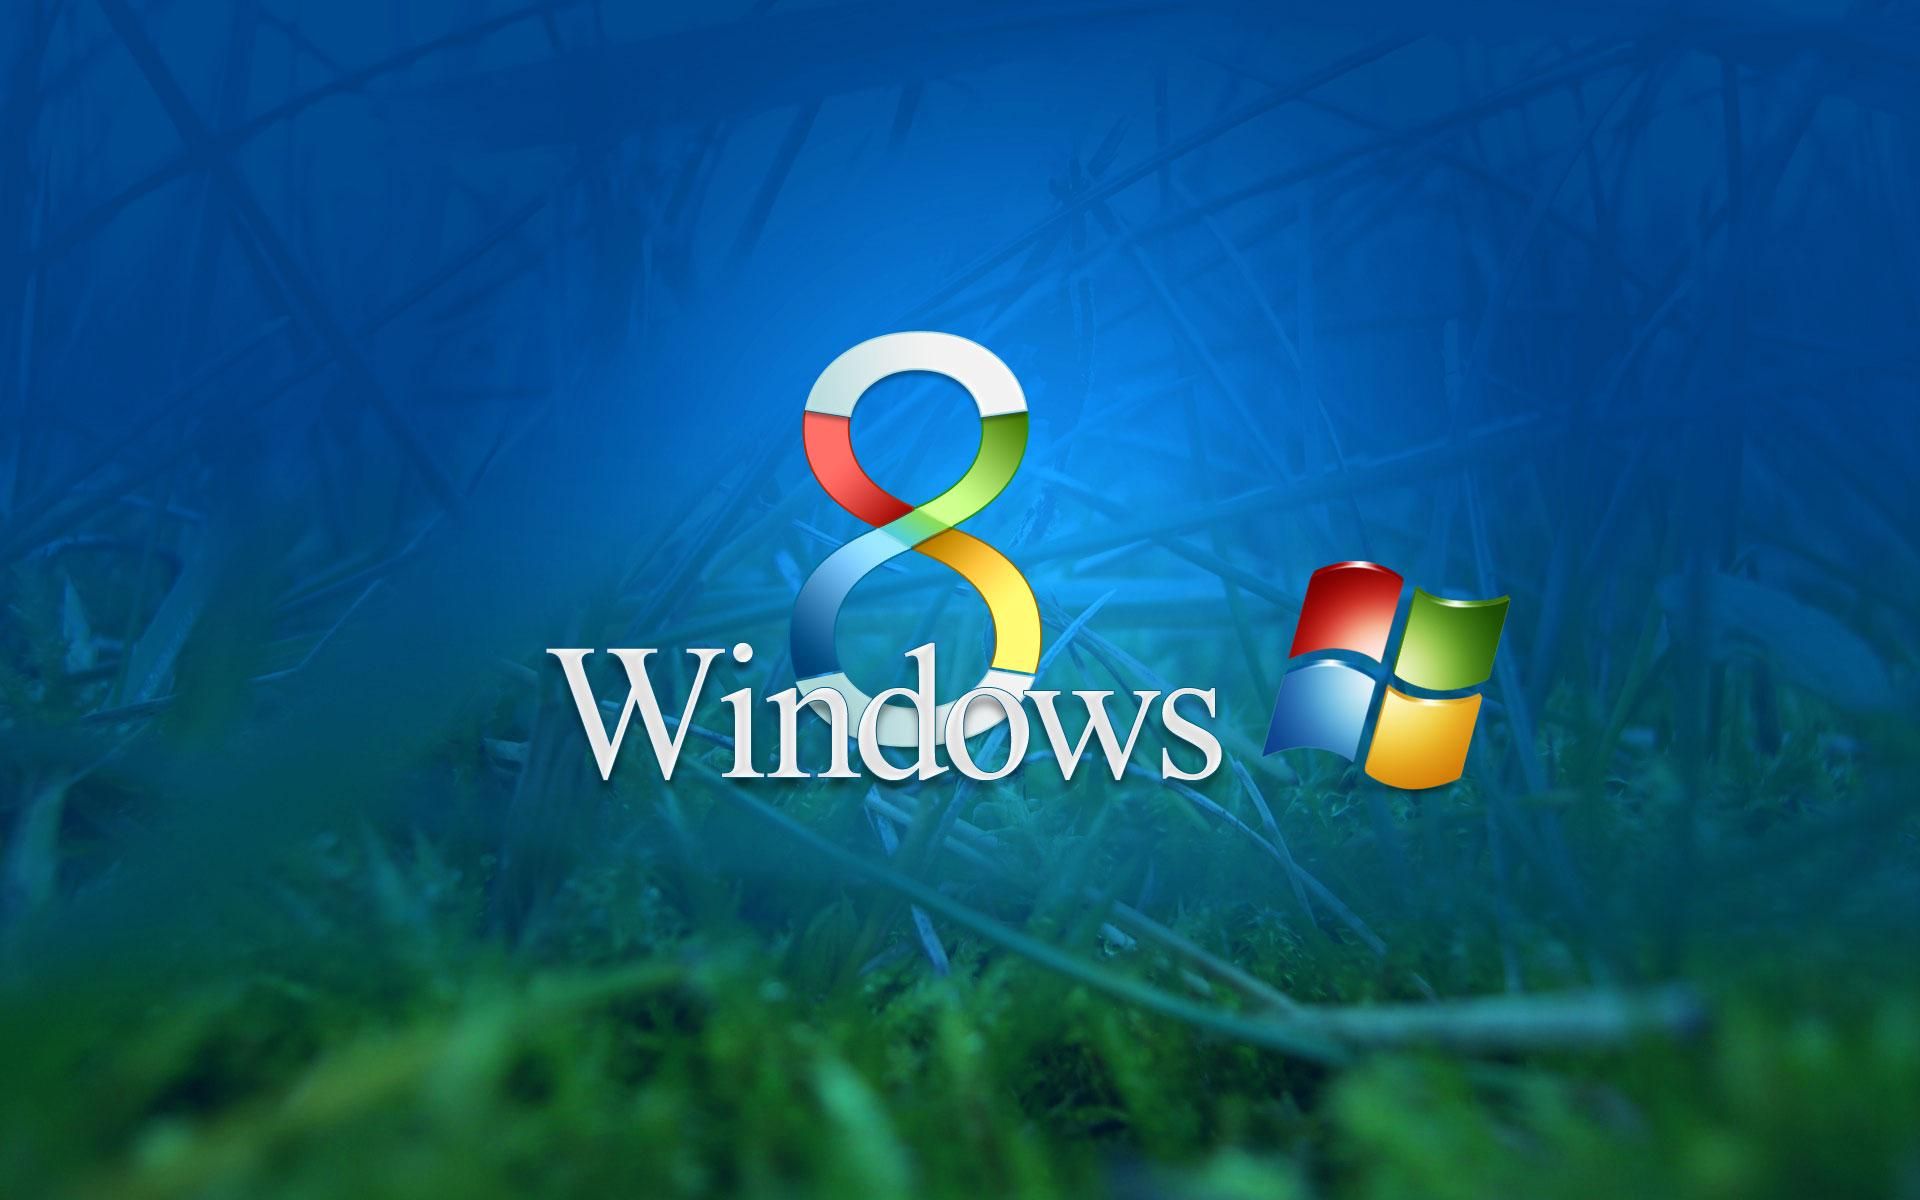 Windows 8 wallpaper hd 3d for desktop